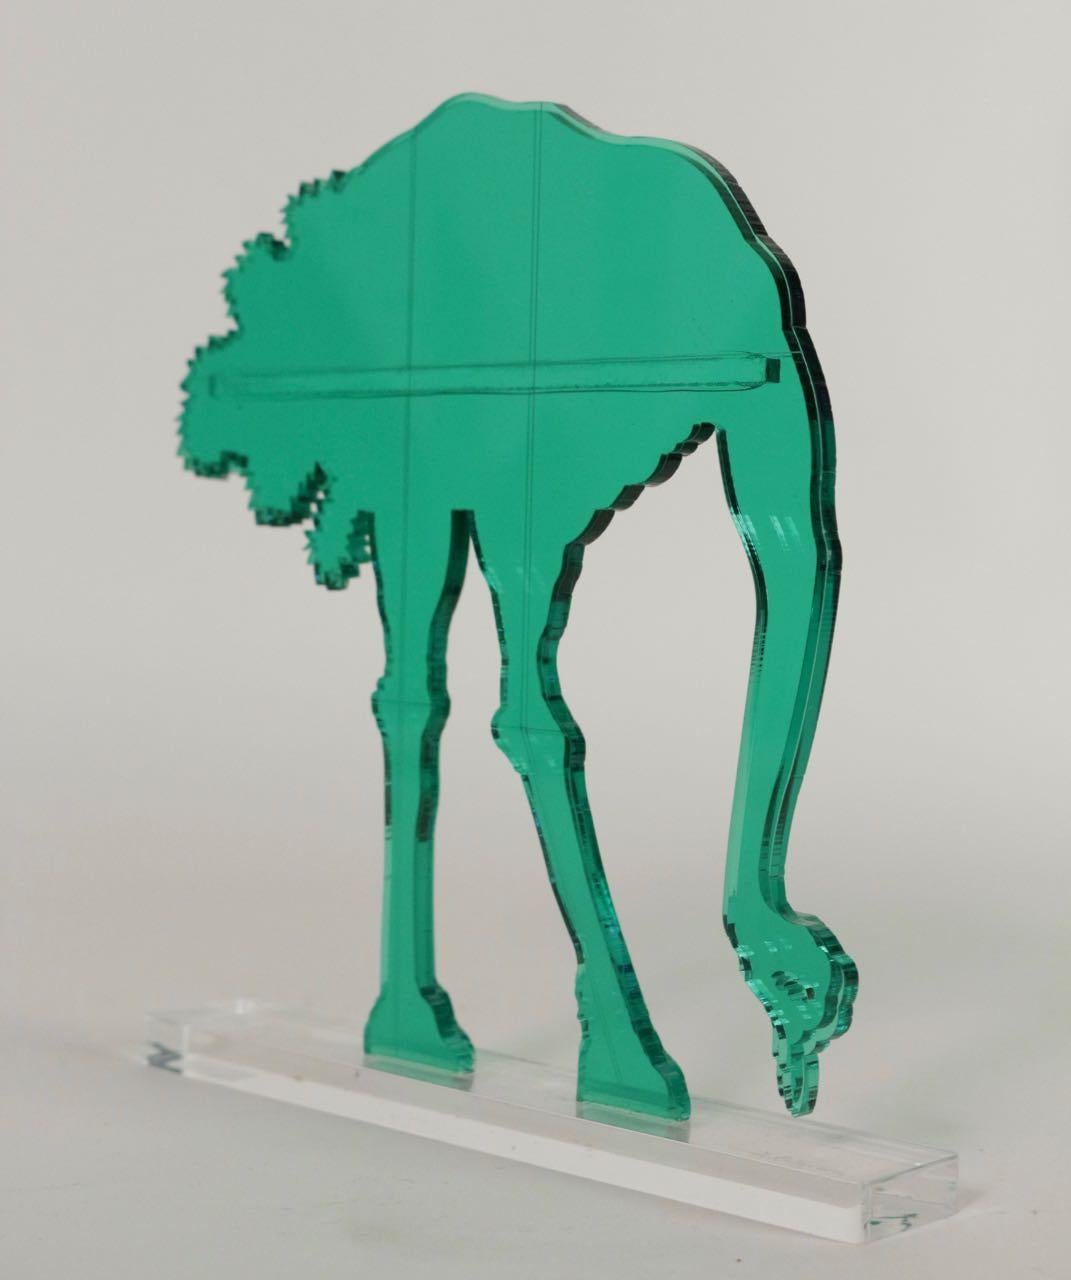 Gino MAROTTA (1935-2012)
Struzzo artificiale, 2010
Edition Artbeat arrêtée
Sculpture, multiple en méthacrylate coloré vert et découpé. Signé sur la base. Dans sa boite d’origine. 
Haut. : 19 cm Long. : 18 cm

Gino MAROTTA (1935-2012)
Struzzo